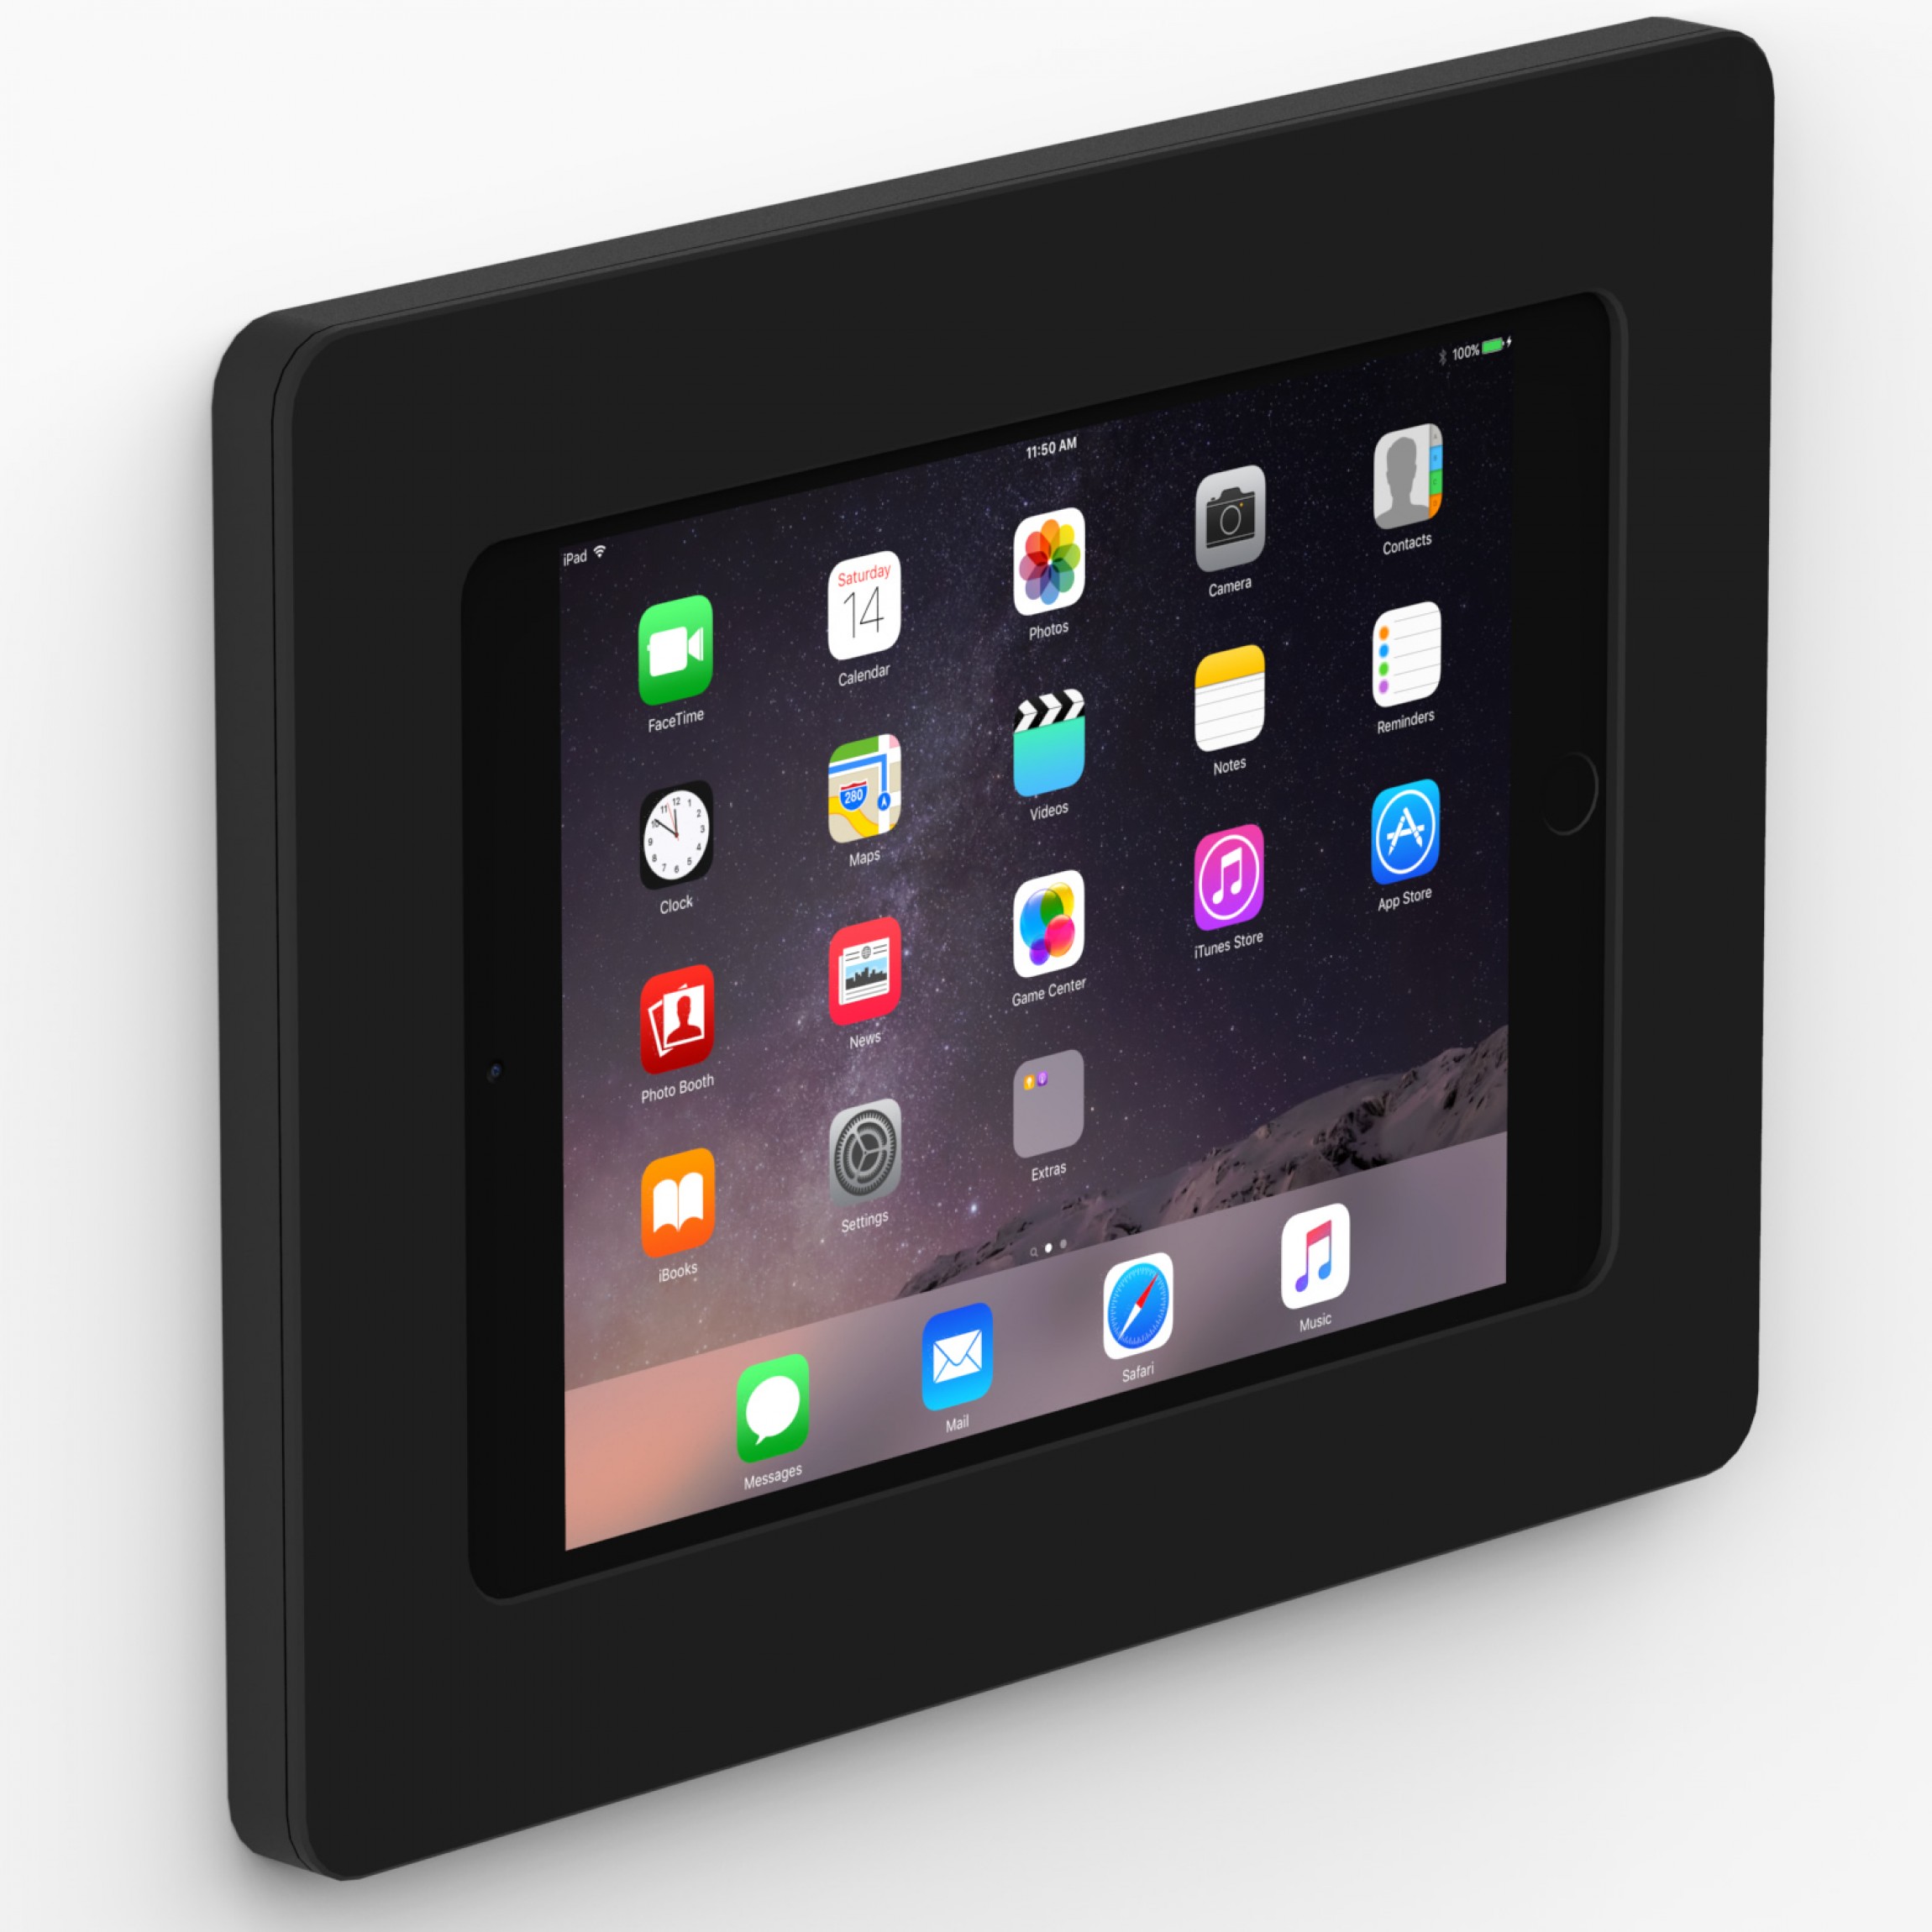 Black - iPad mini 1, 2, 3 - VidaMount On-Wall Tablet Mount